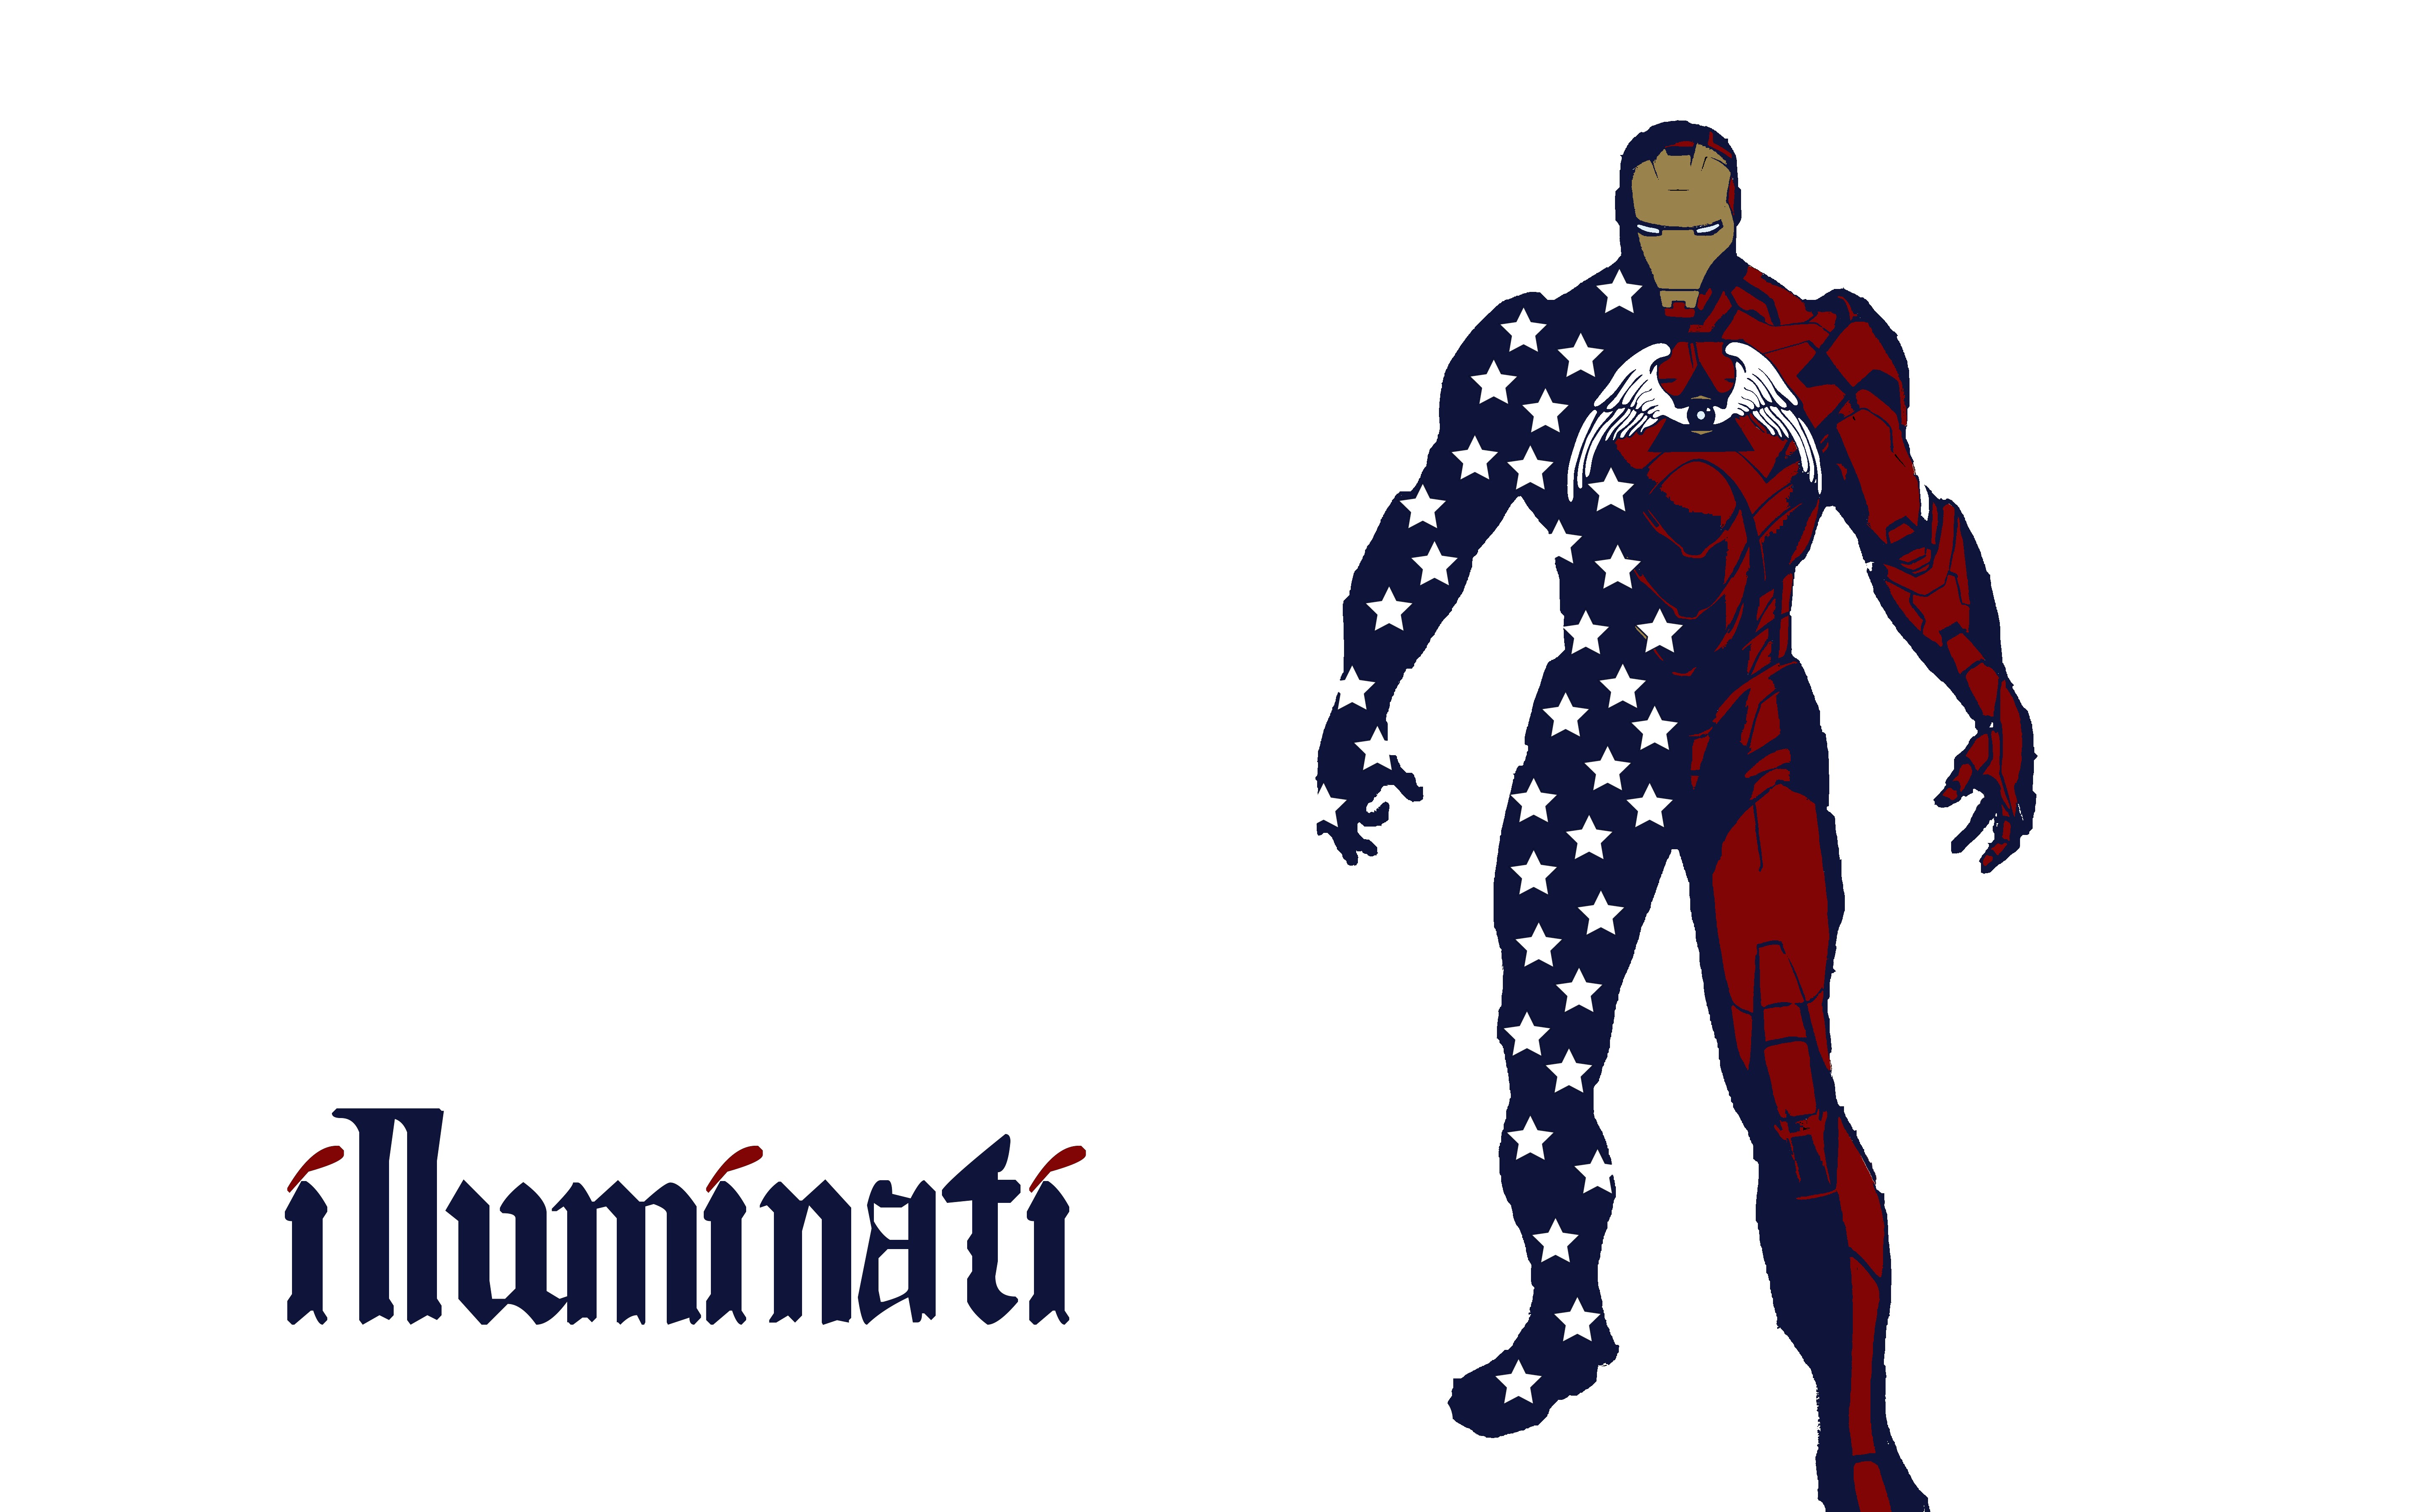 Iron Man, Illuminati, The Avengers Wallpaper